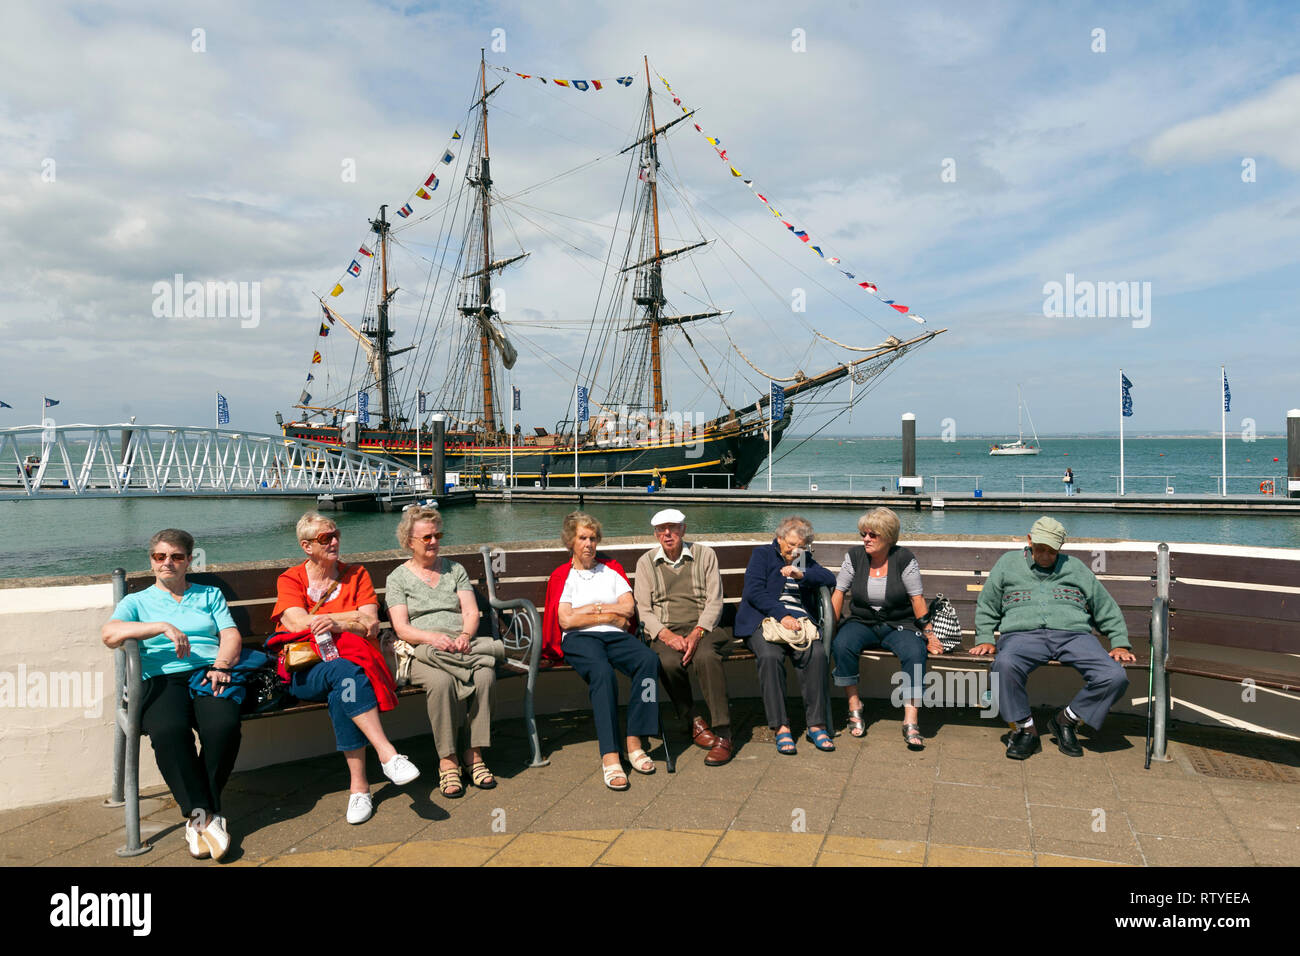 Il Bounty, mutiny, copia, Capitano Bliy, Signor Christian, Cowes, Isle of Wight, England, Regno Unito Foto Stock